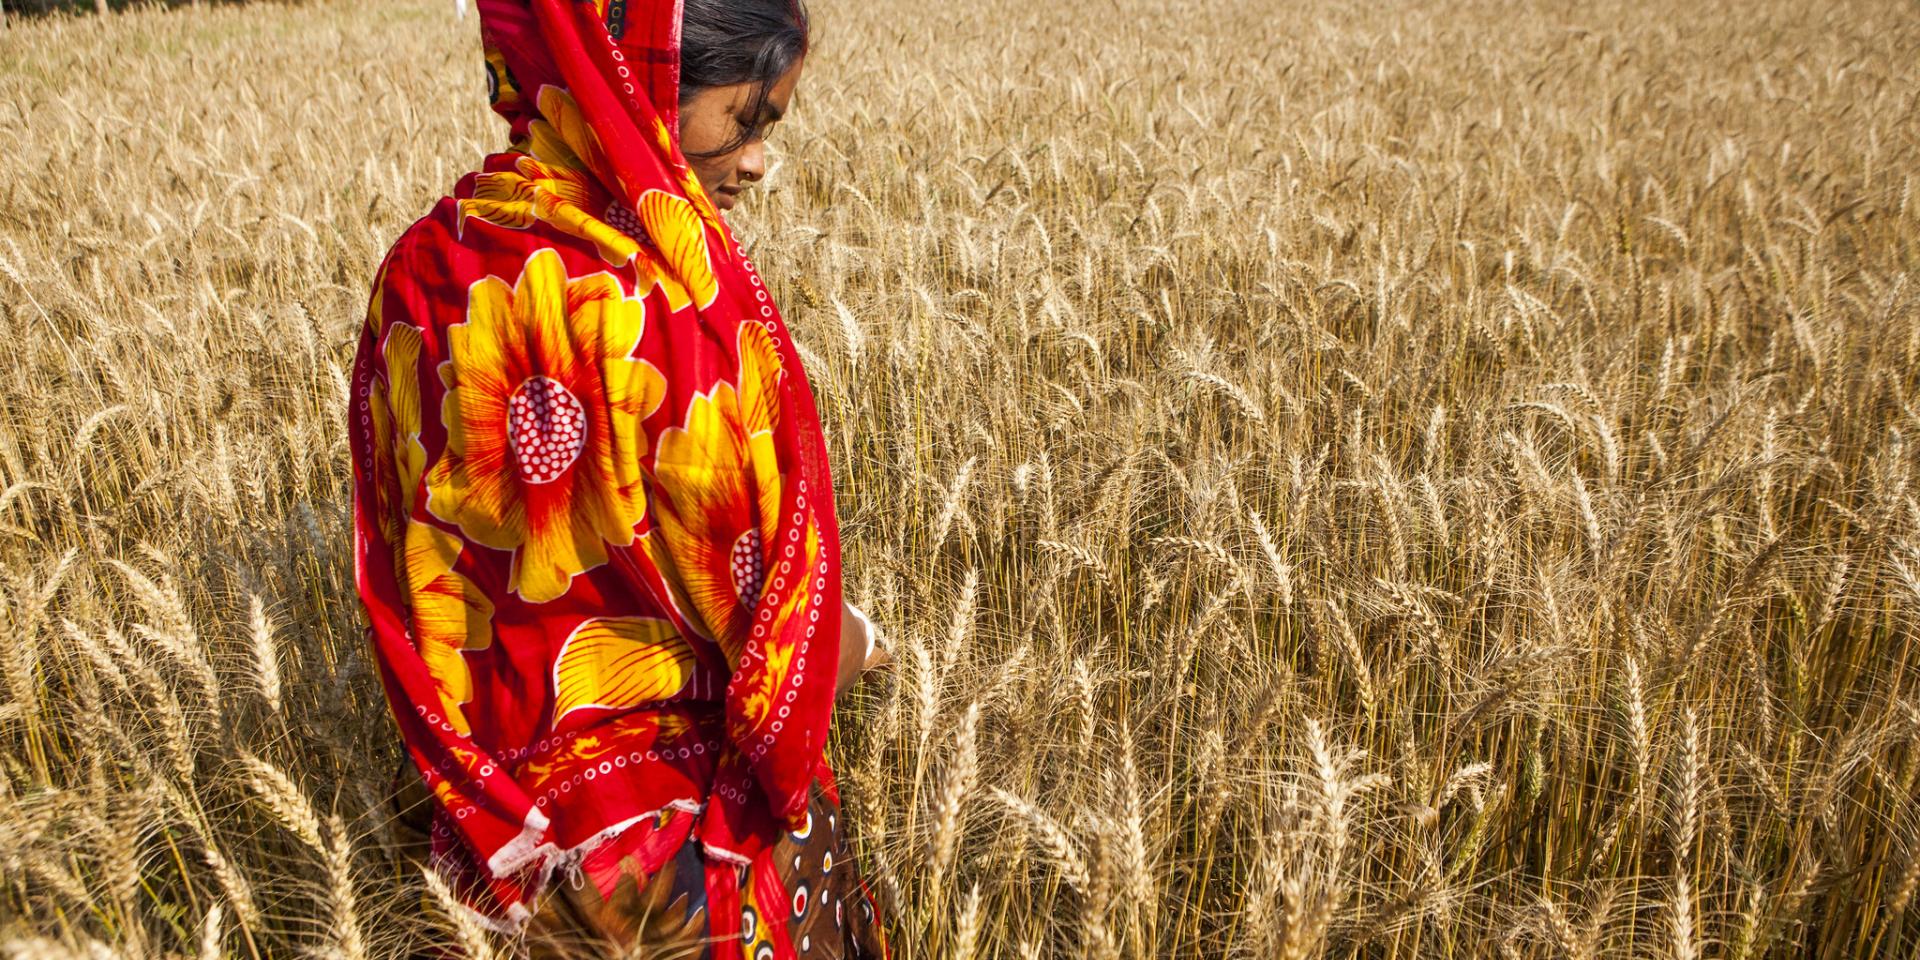 Woman wheat farmer in Rajbari District, Bangladesh.